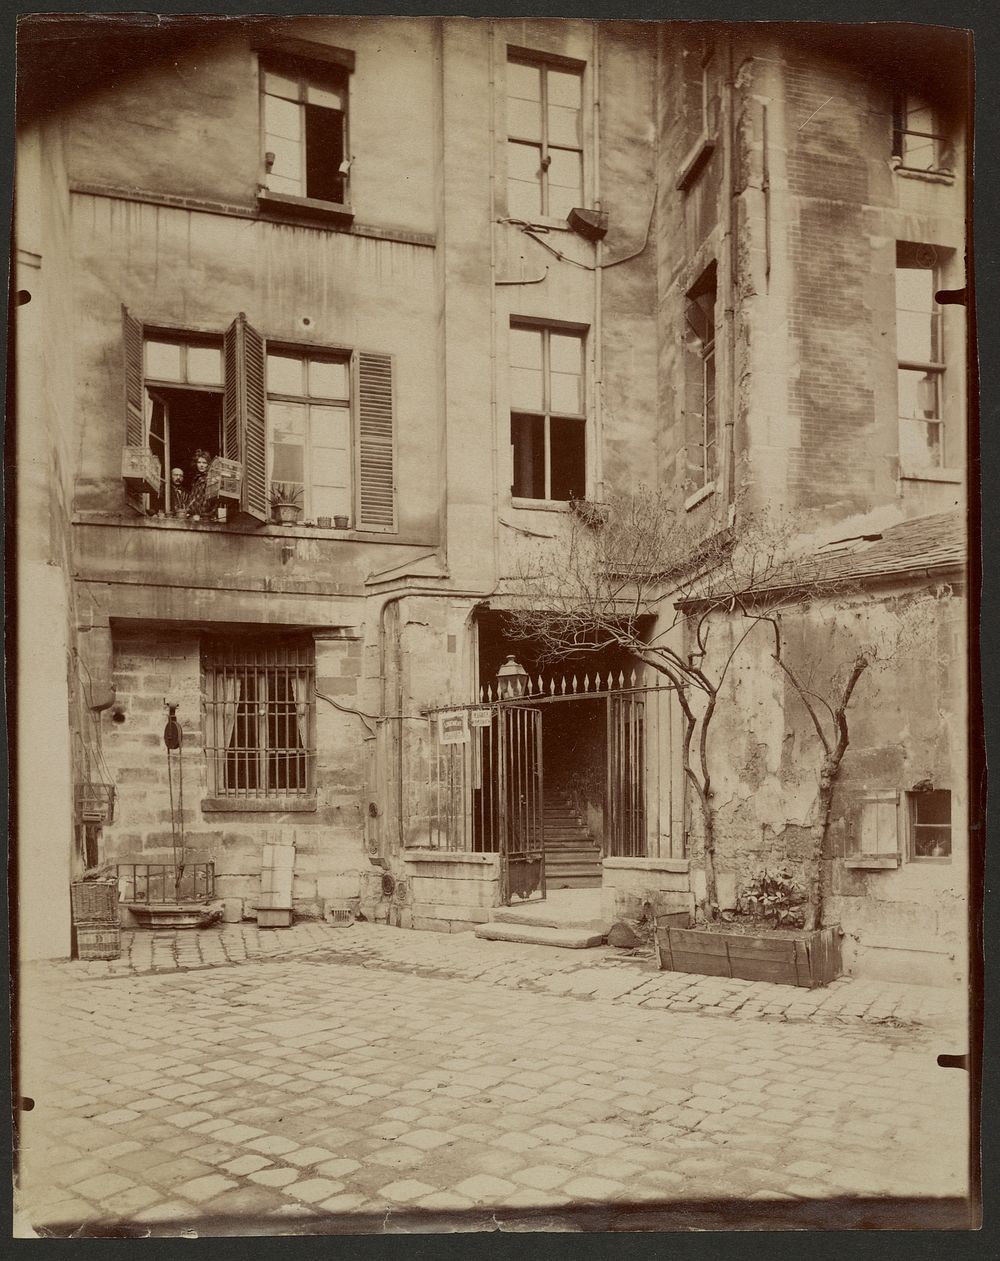 Cour de Rouen by Eugène Atget